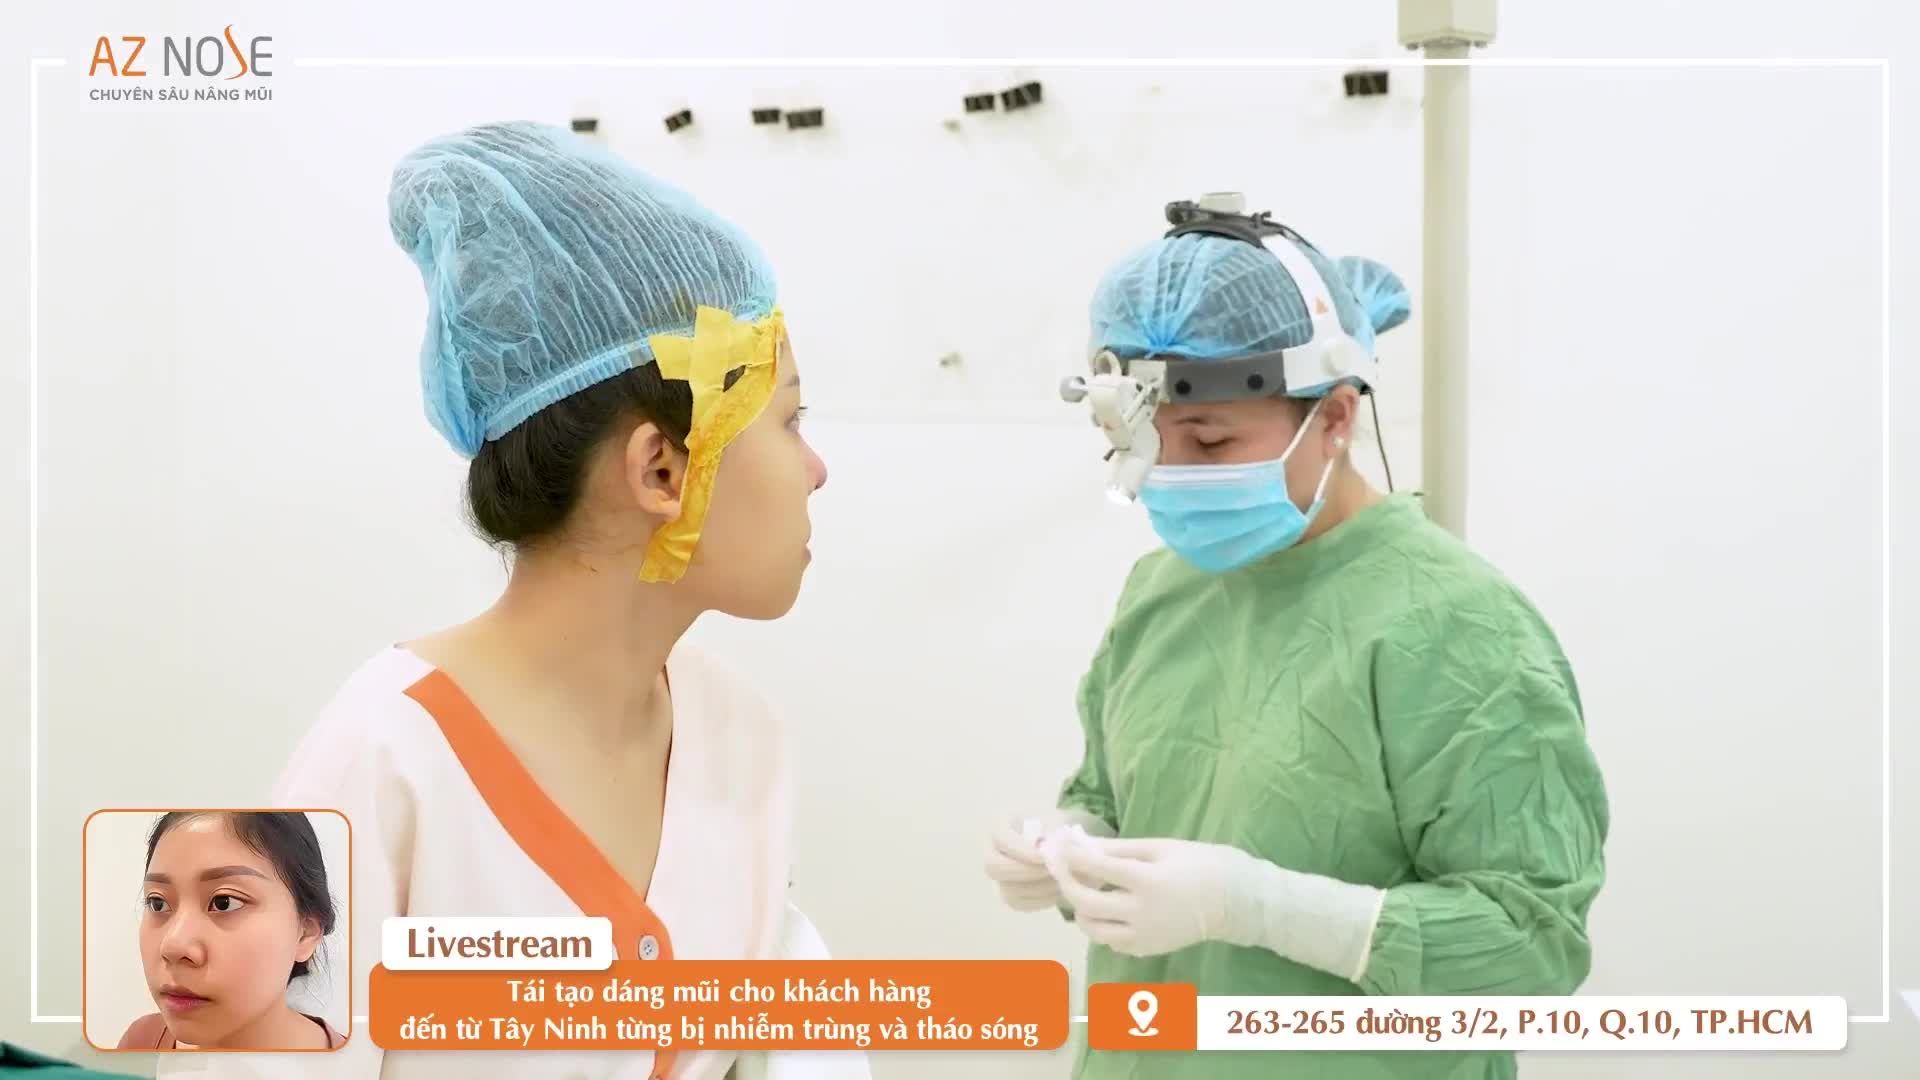 Bác sĩ Hoàng Nhung tái tạo dáng mũi cho khách hàng đến từ Tây Ninh